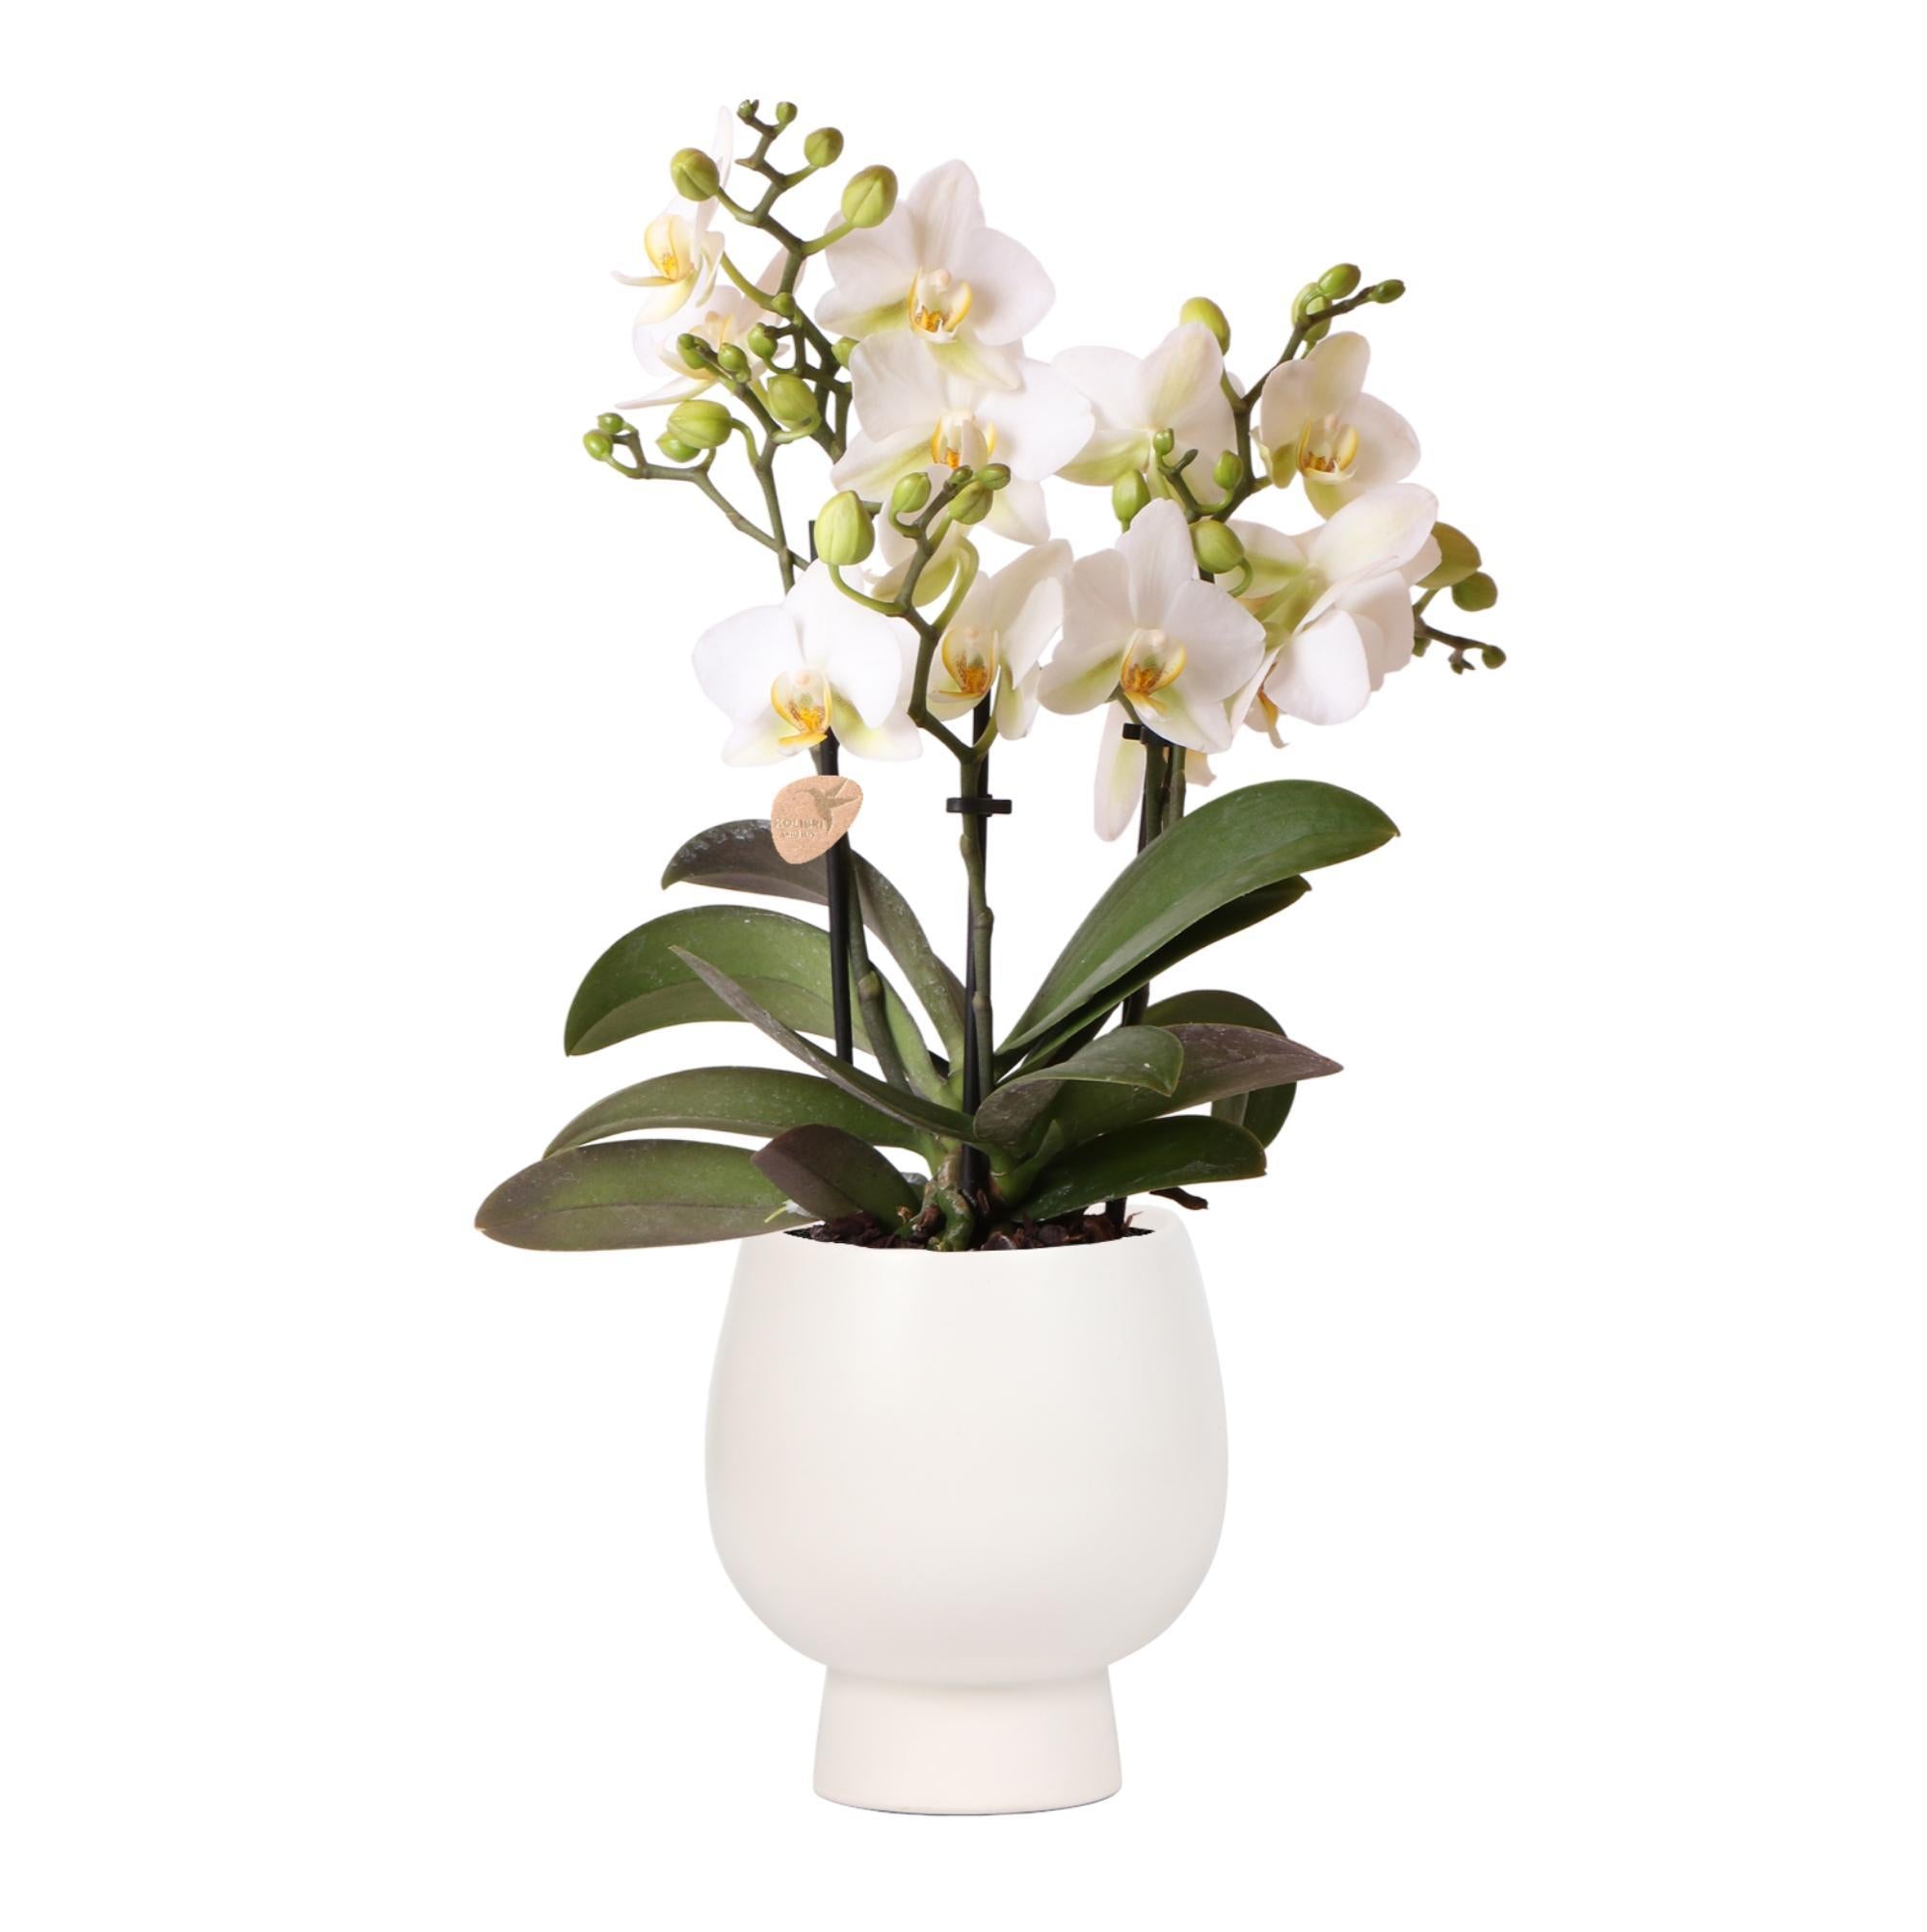 kolibriorchids Orchidée Phalaenopsis blanche - Lausanne + pot décoratif blanc Scandic - taille de pot 9cm + hauteur 40cm - plante d'intérieur fleurie - Kolibri